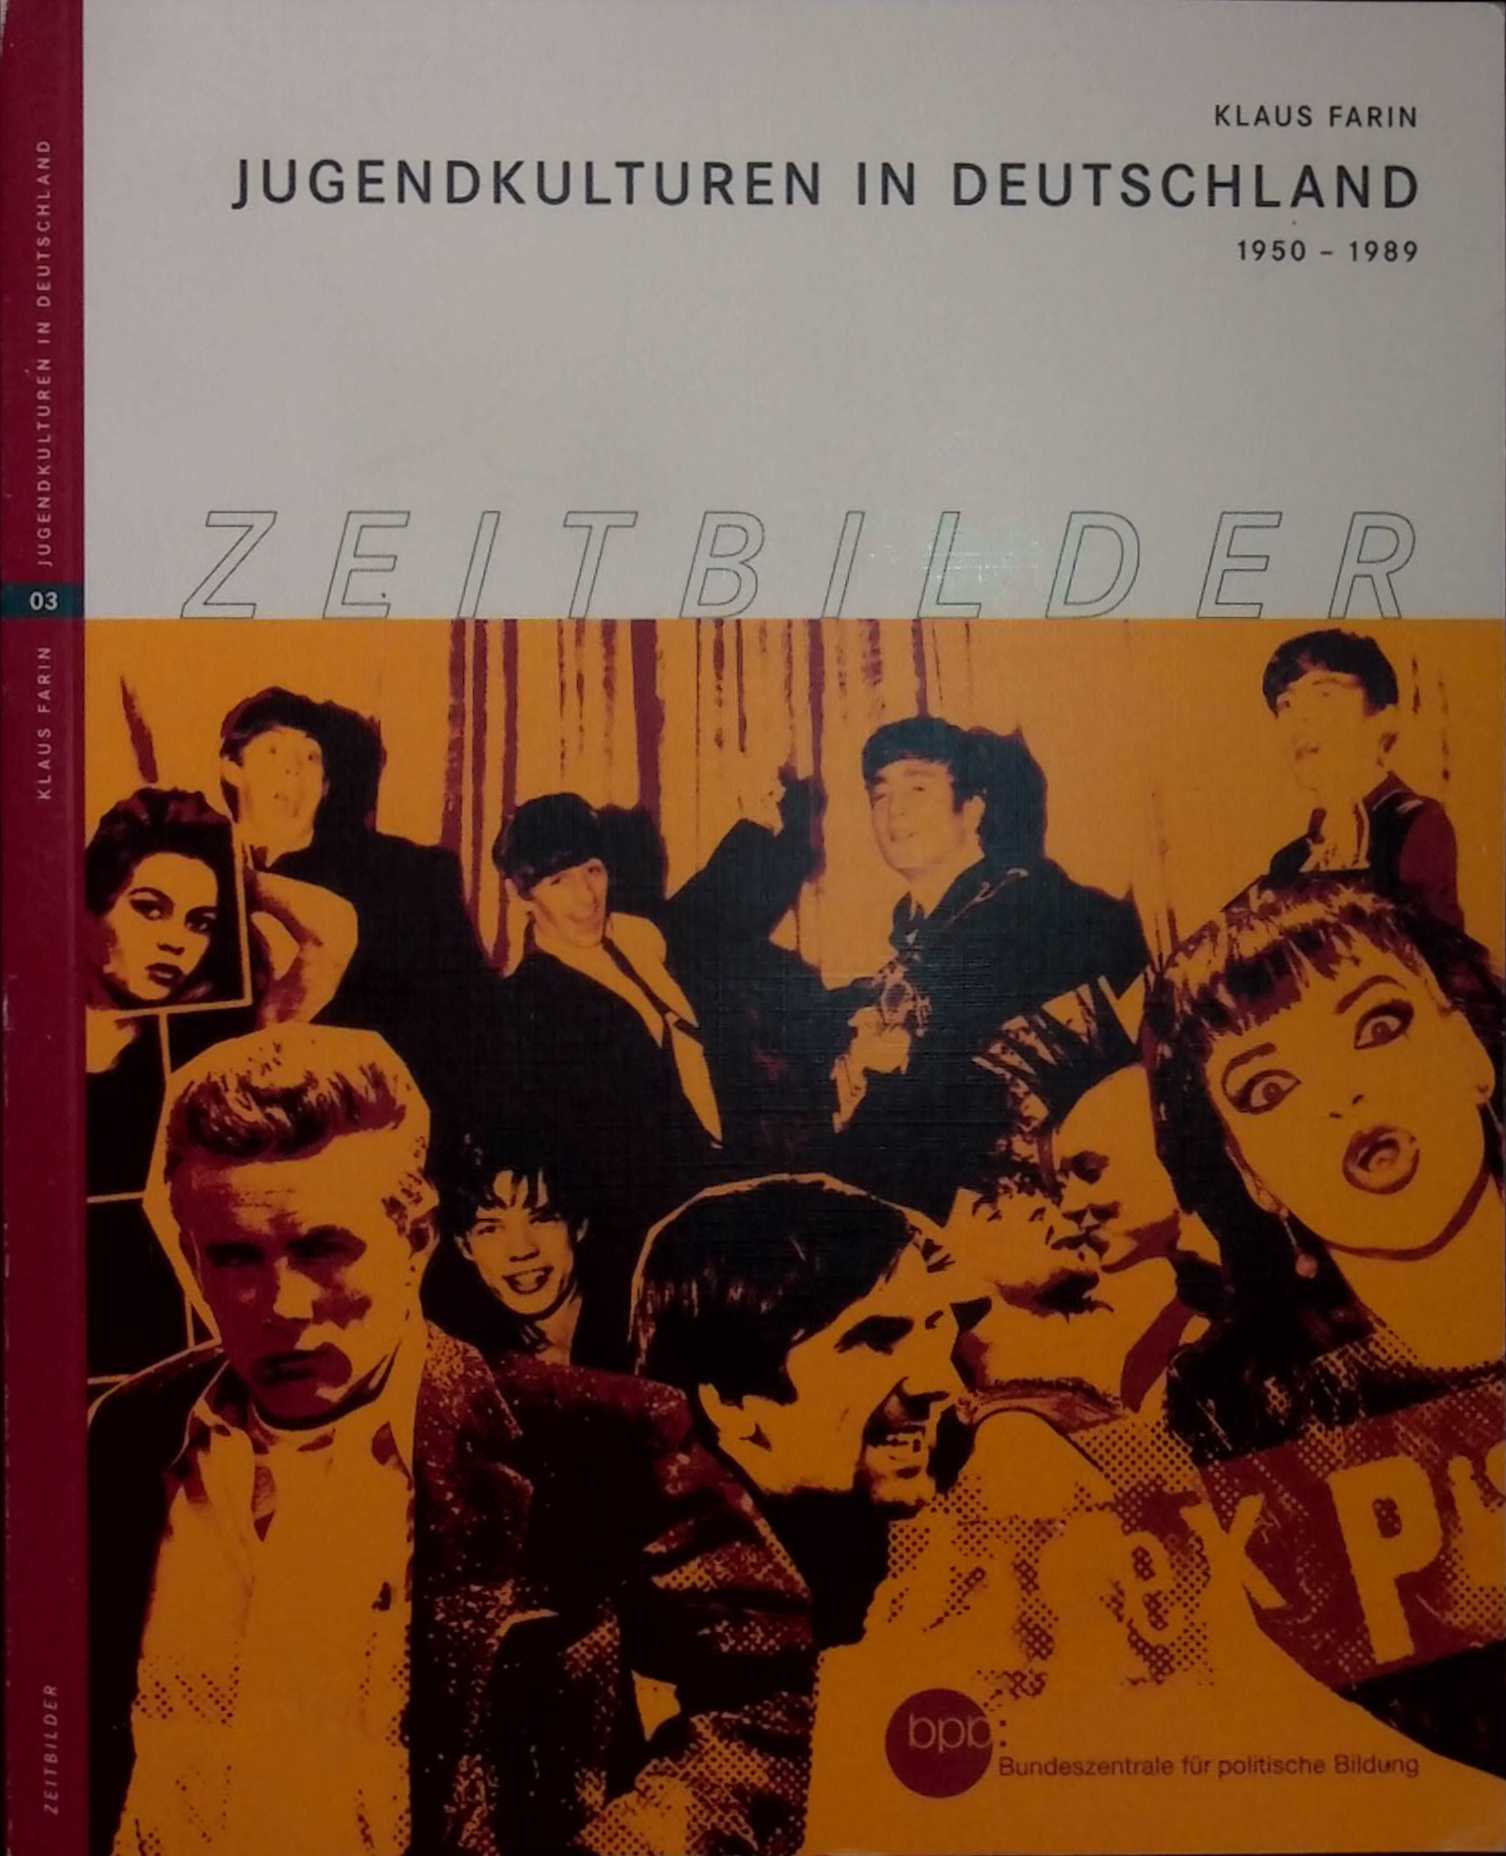 Jugendkulturen In Deutschland 1950 - 1989 - Klaus Farin